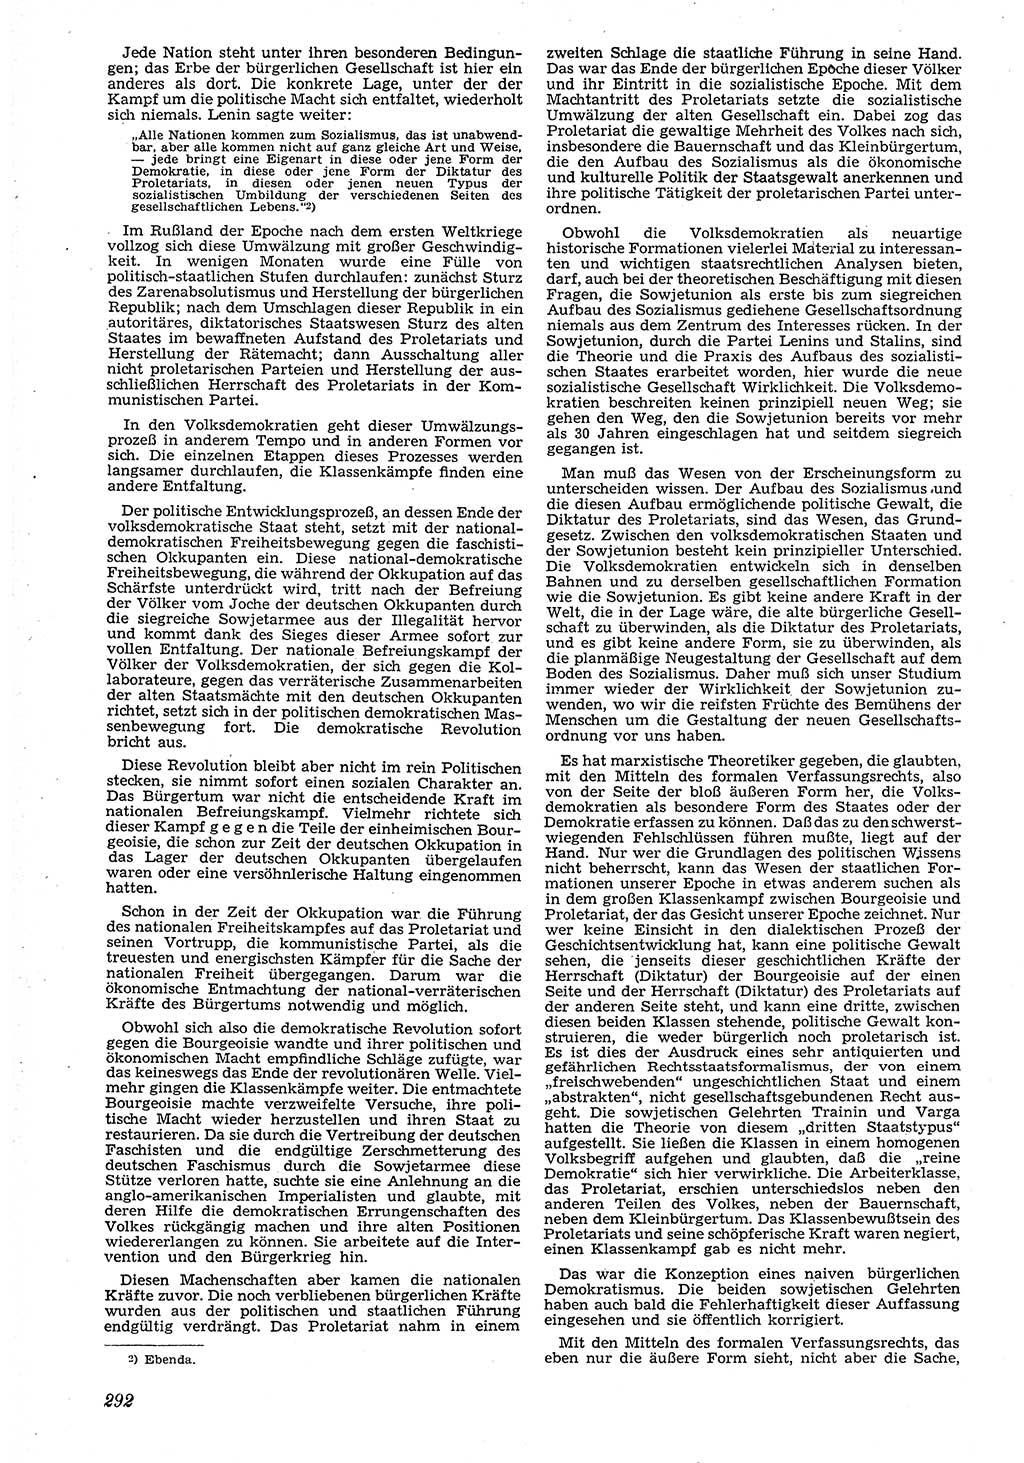 Neue Justiz (NJ), Zeitschrift für Recht und Rechtswissenschaft [Deutsche Demokratische Republik (DDR)], 4. Jahrgang 1950, Seite 292 (NJ DDR 1950, S. 292)